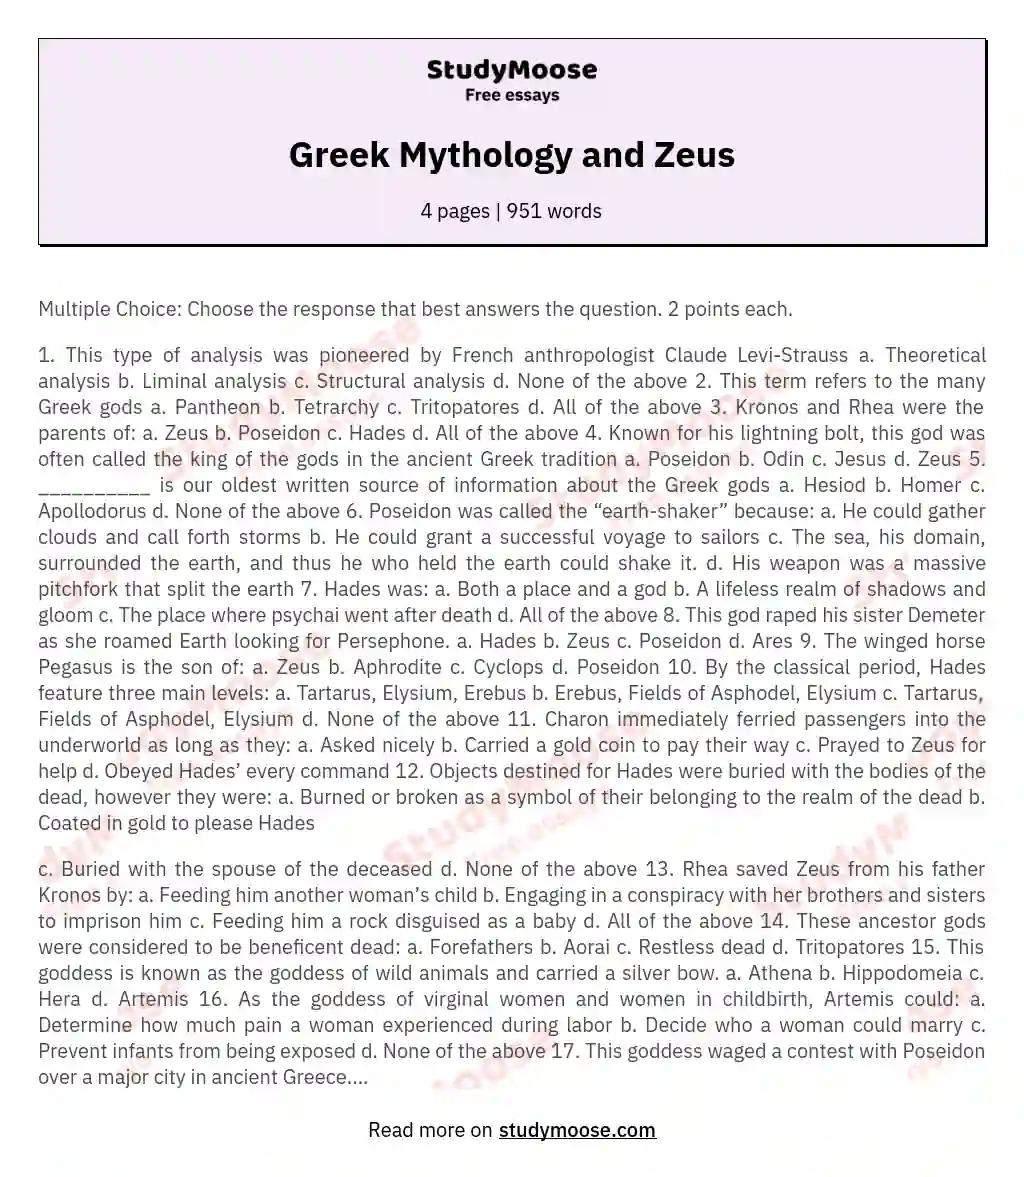 Greek Mythology and Zeus